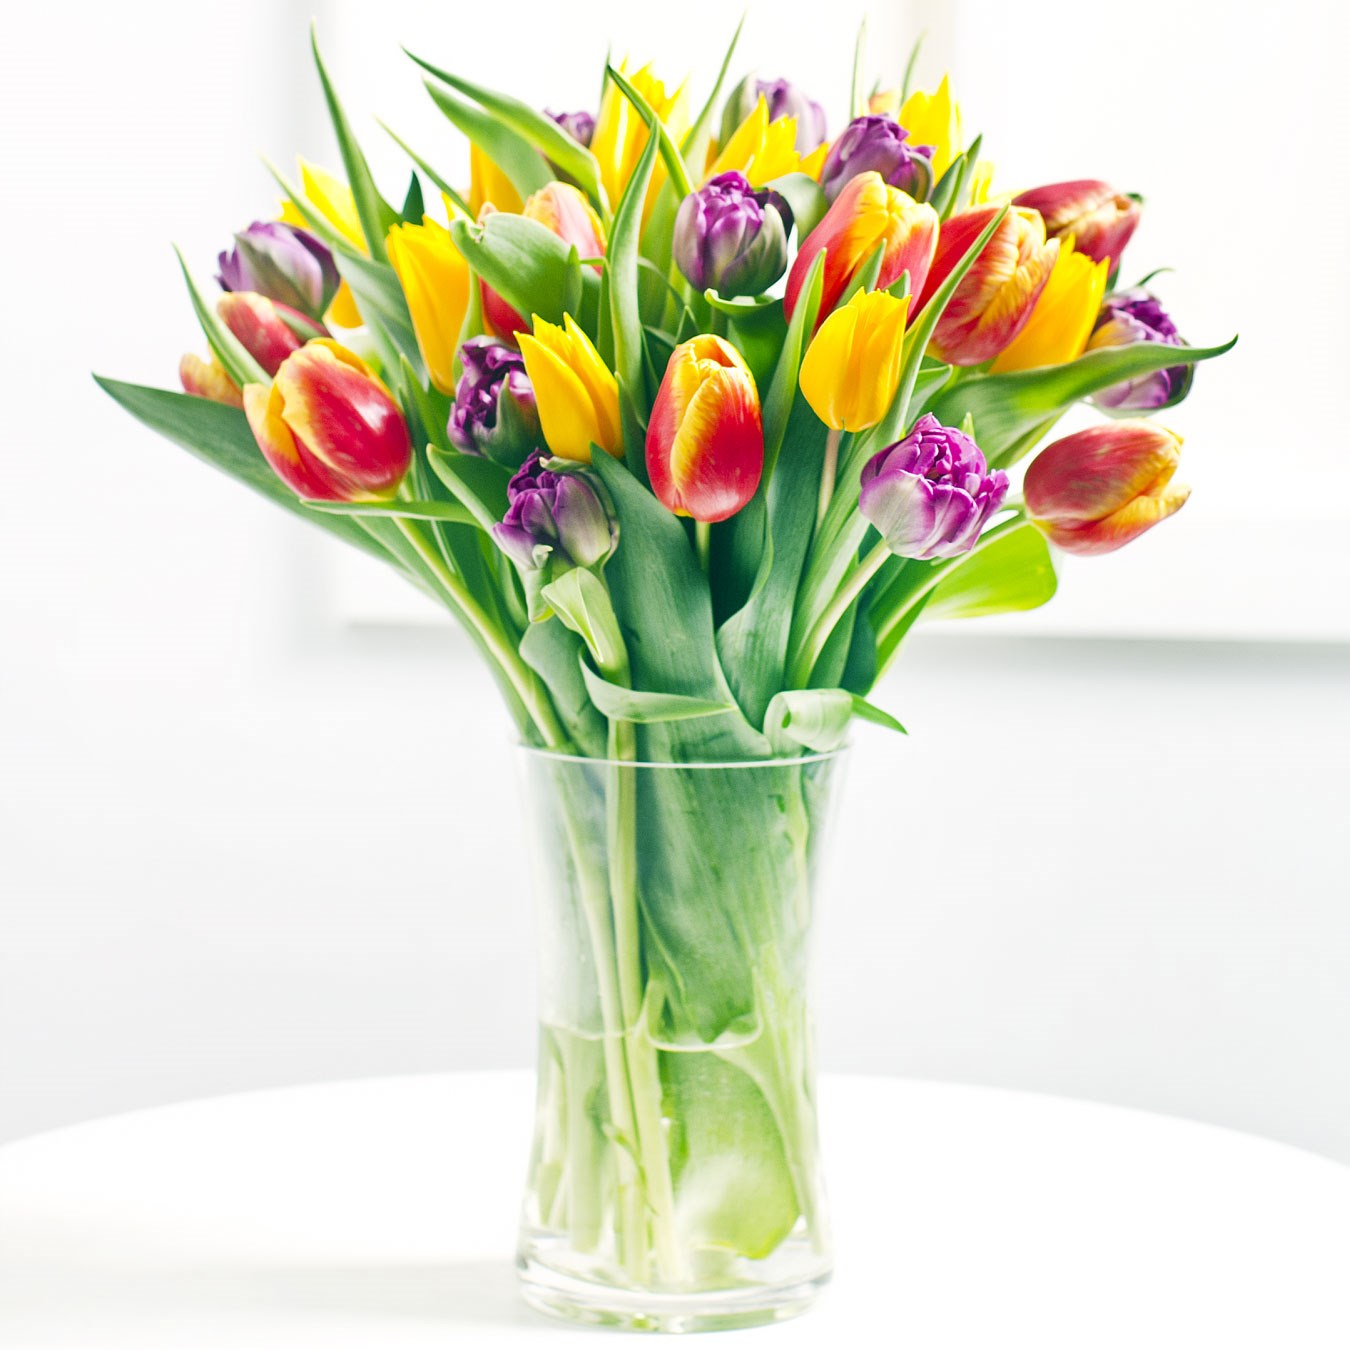 Seasonal bouquet of tulips